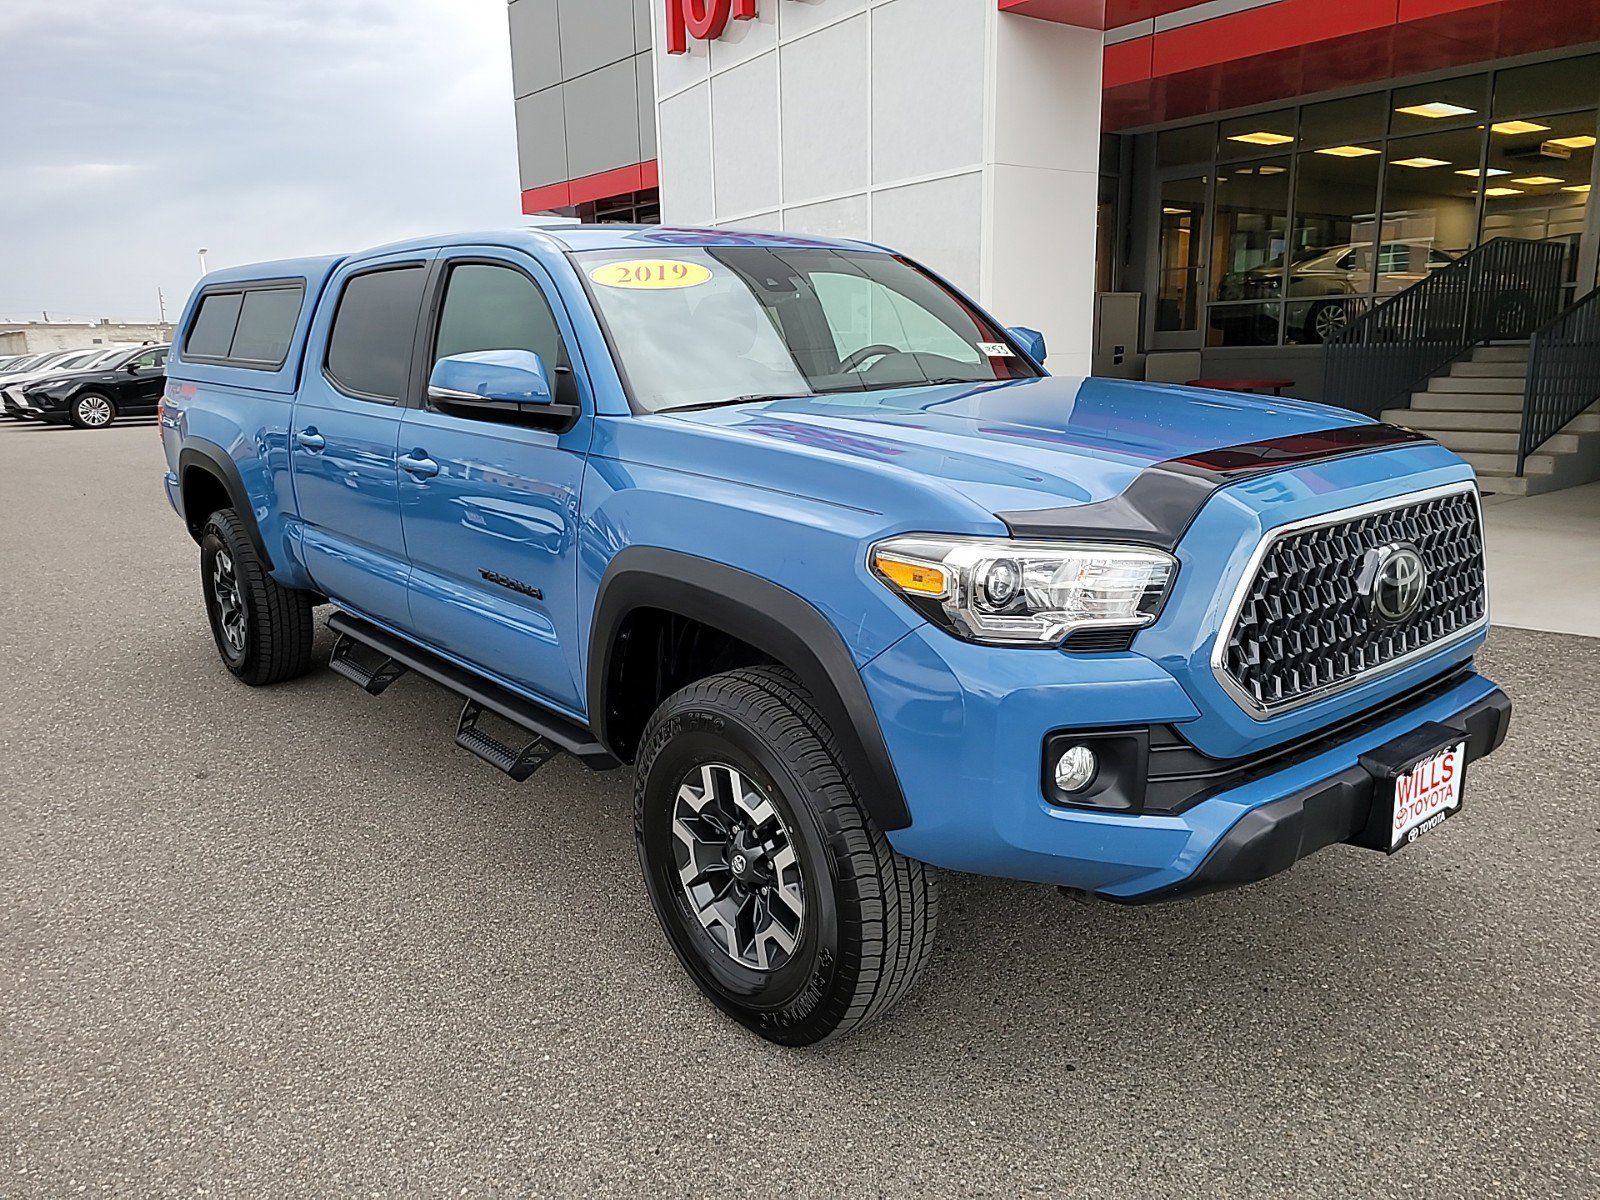 2019 - Toyota - Tacoma 4WD - $35,999